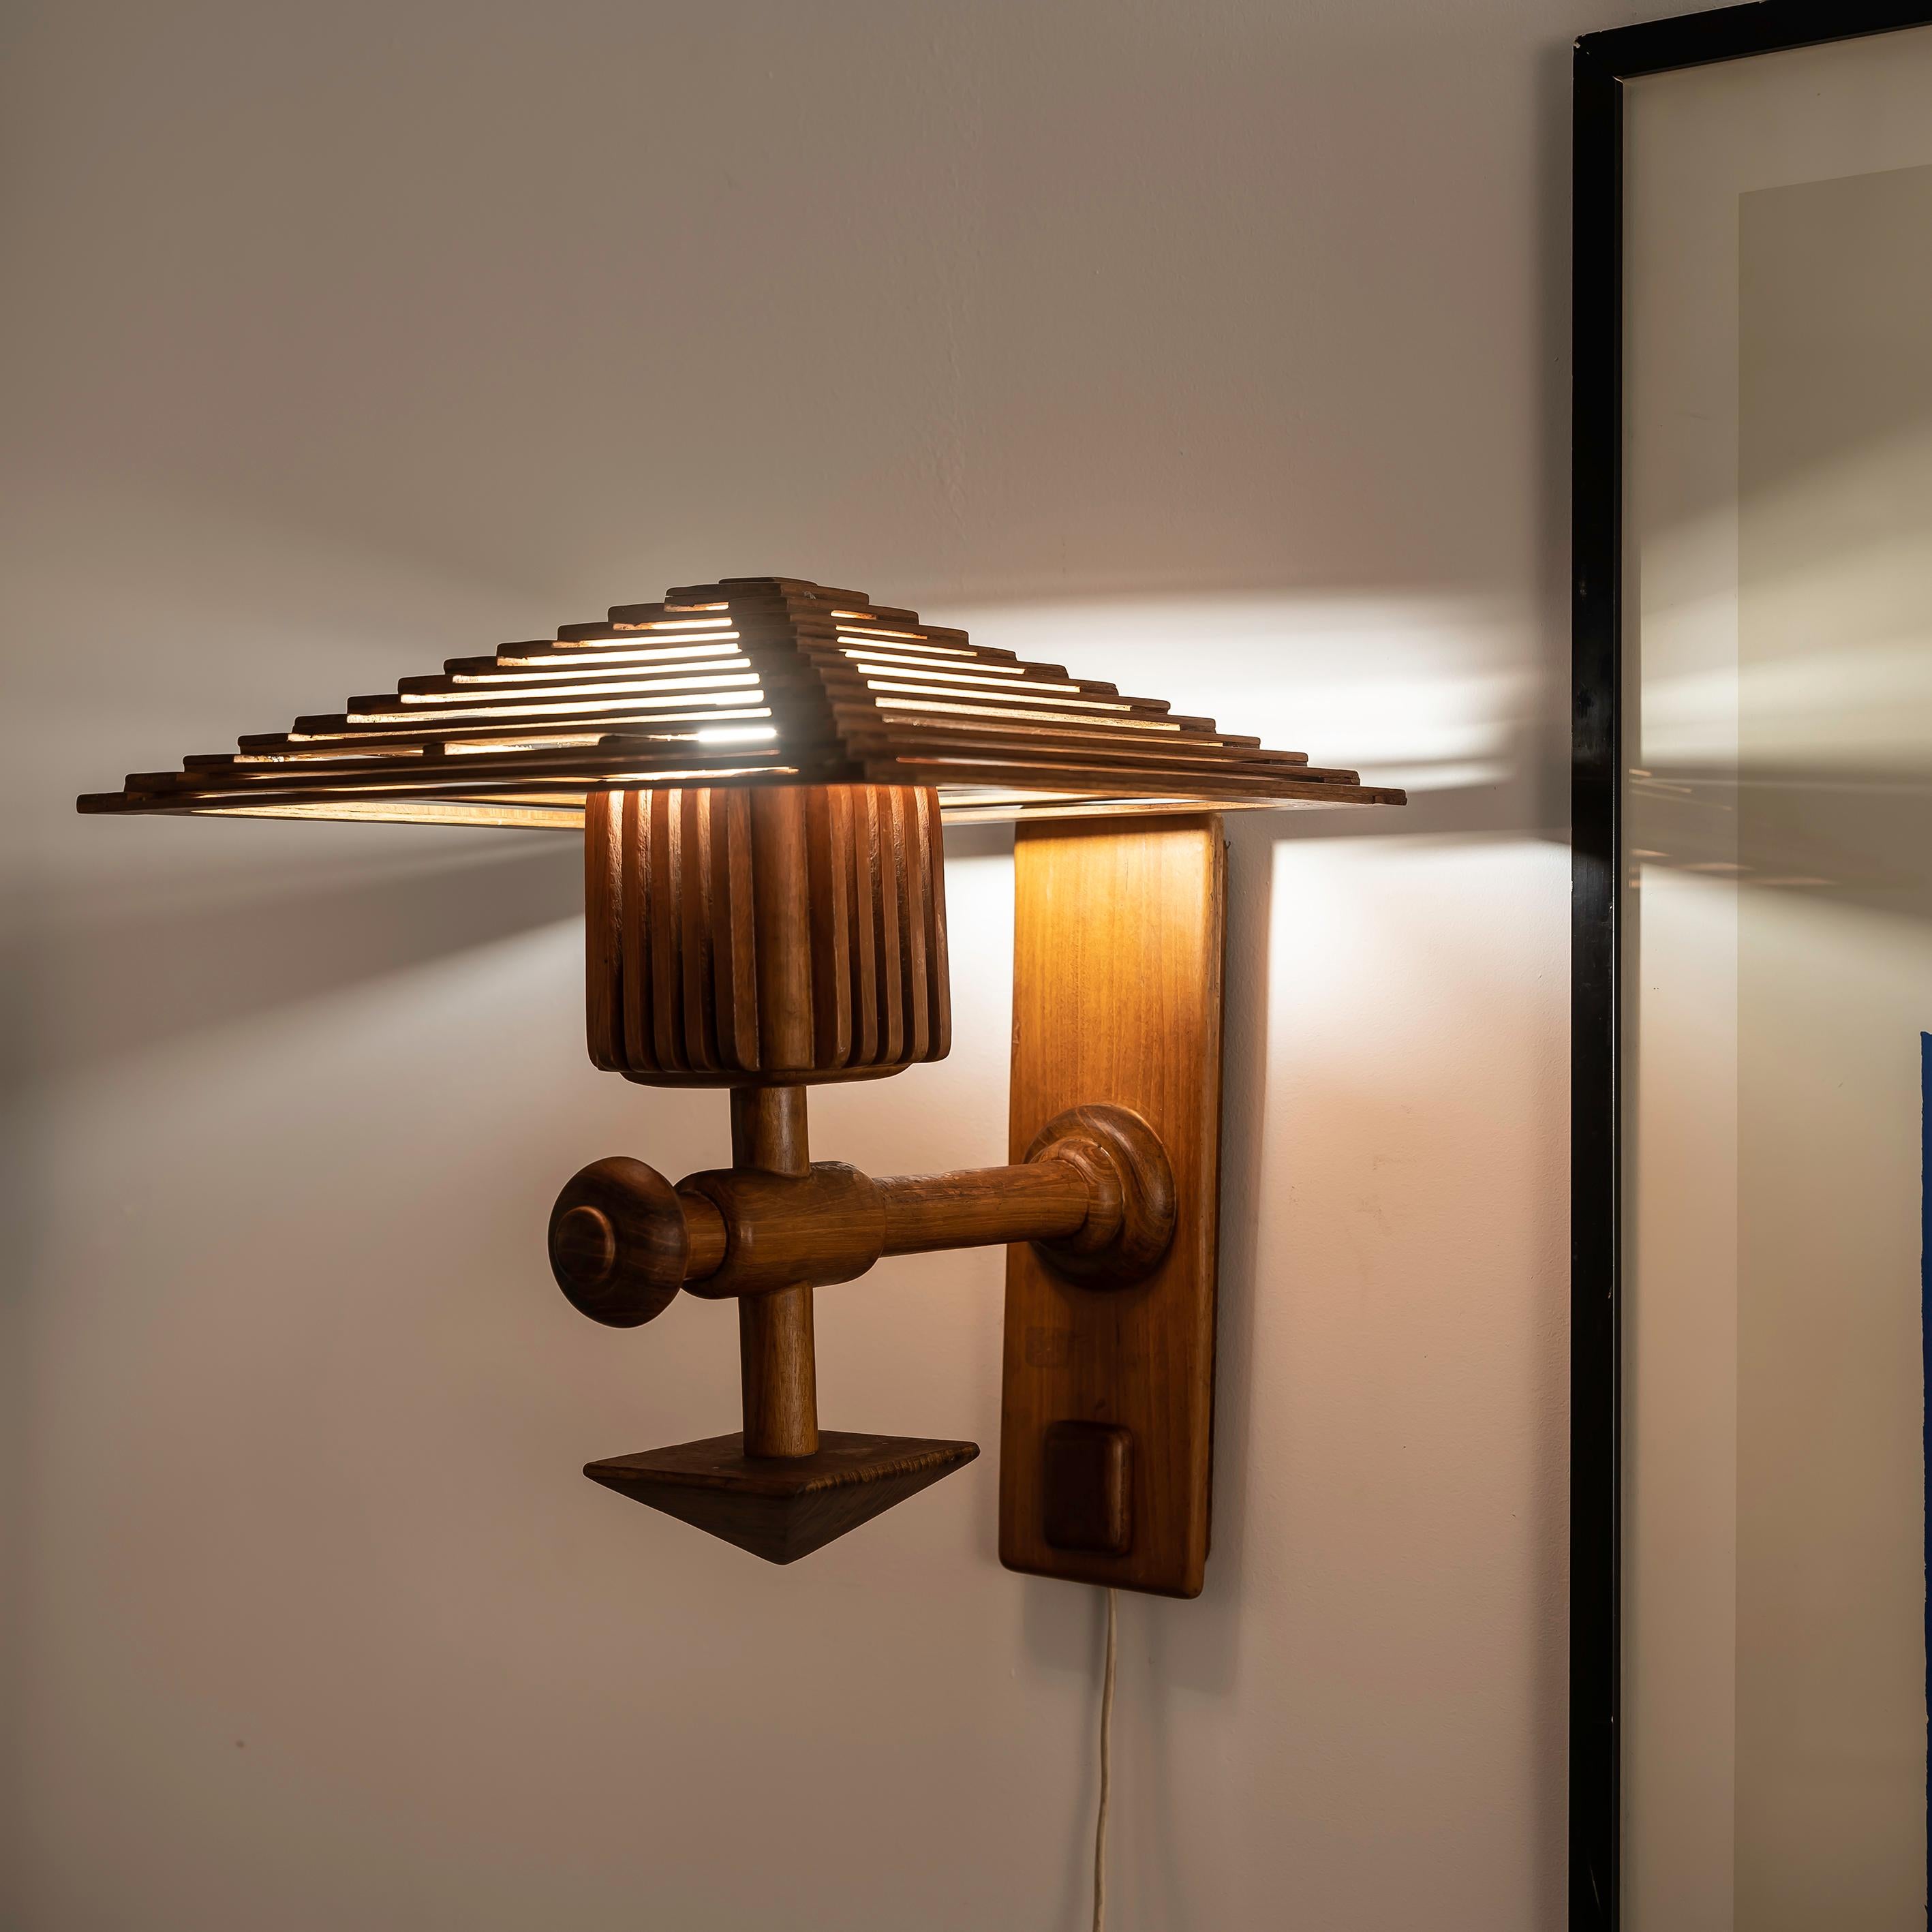 Diese Wandleuchte aus Holz im orientalisch-skandinavischen Stil aus den 1960er Jahren ist eine einzigartige Verschmelzung zweier unterschiedlicher Designtraditionen. Das Ergebnis ist ein zeitloses und fesselndes Stück. Die Mischung aus